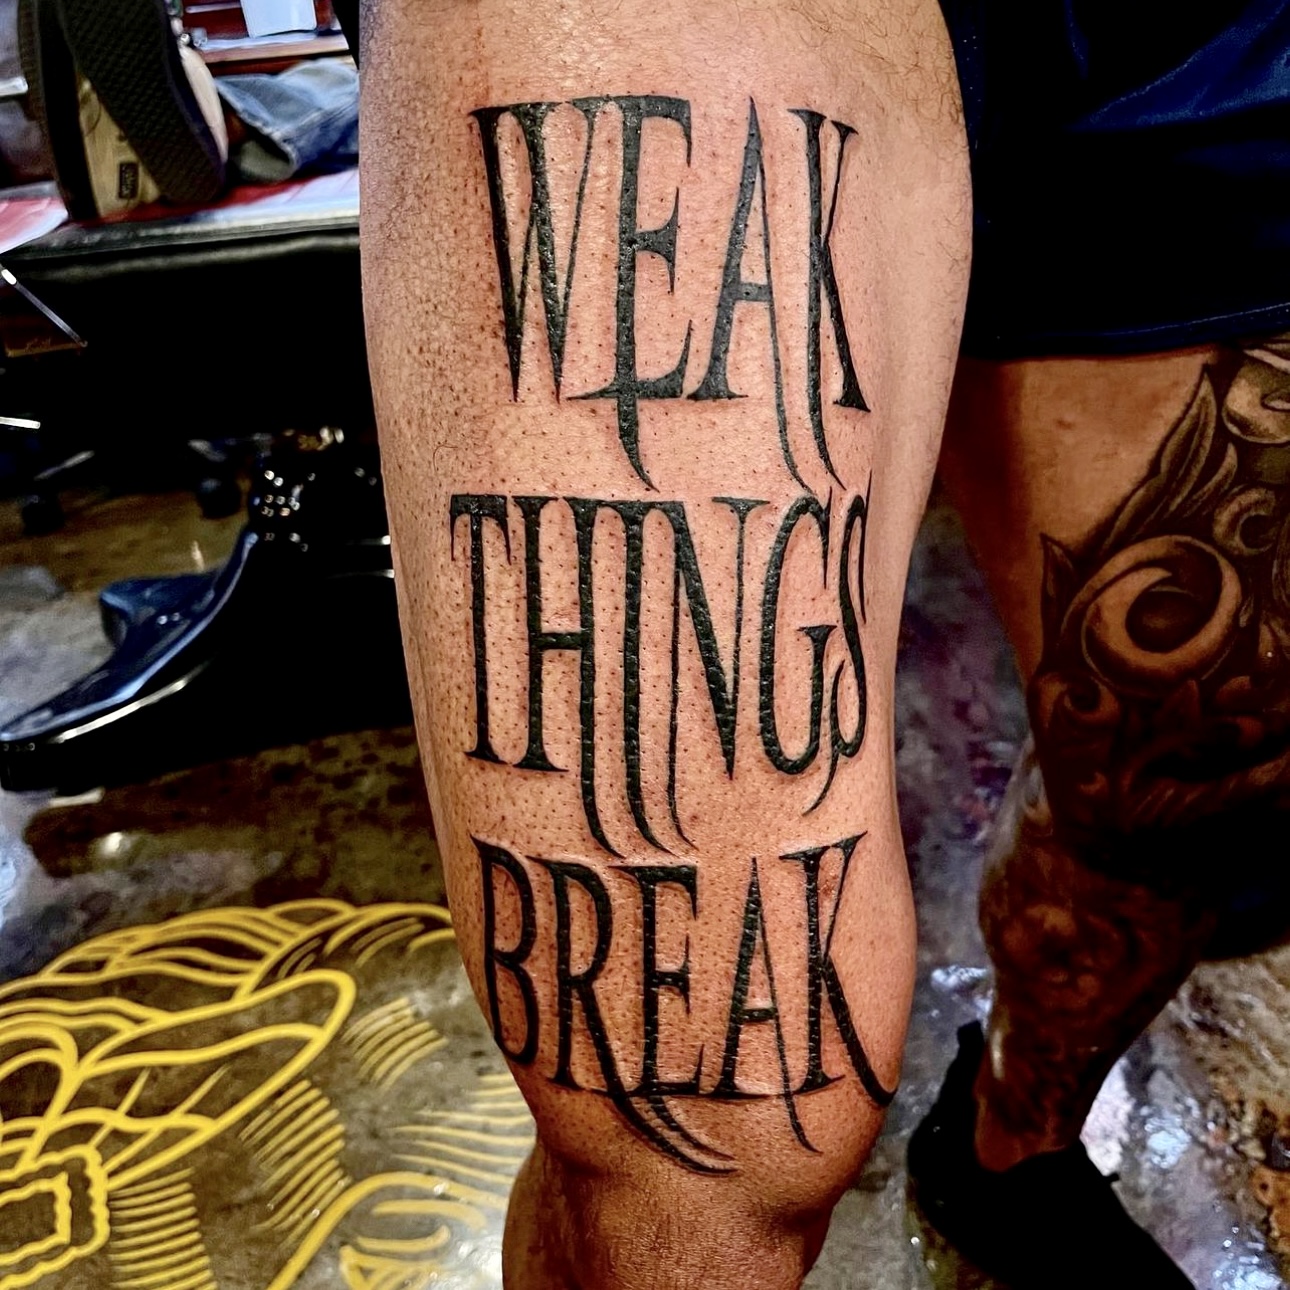 Tattoo that says "weak things break"